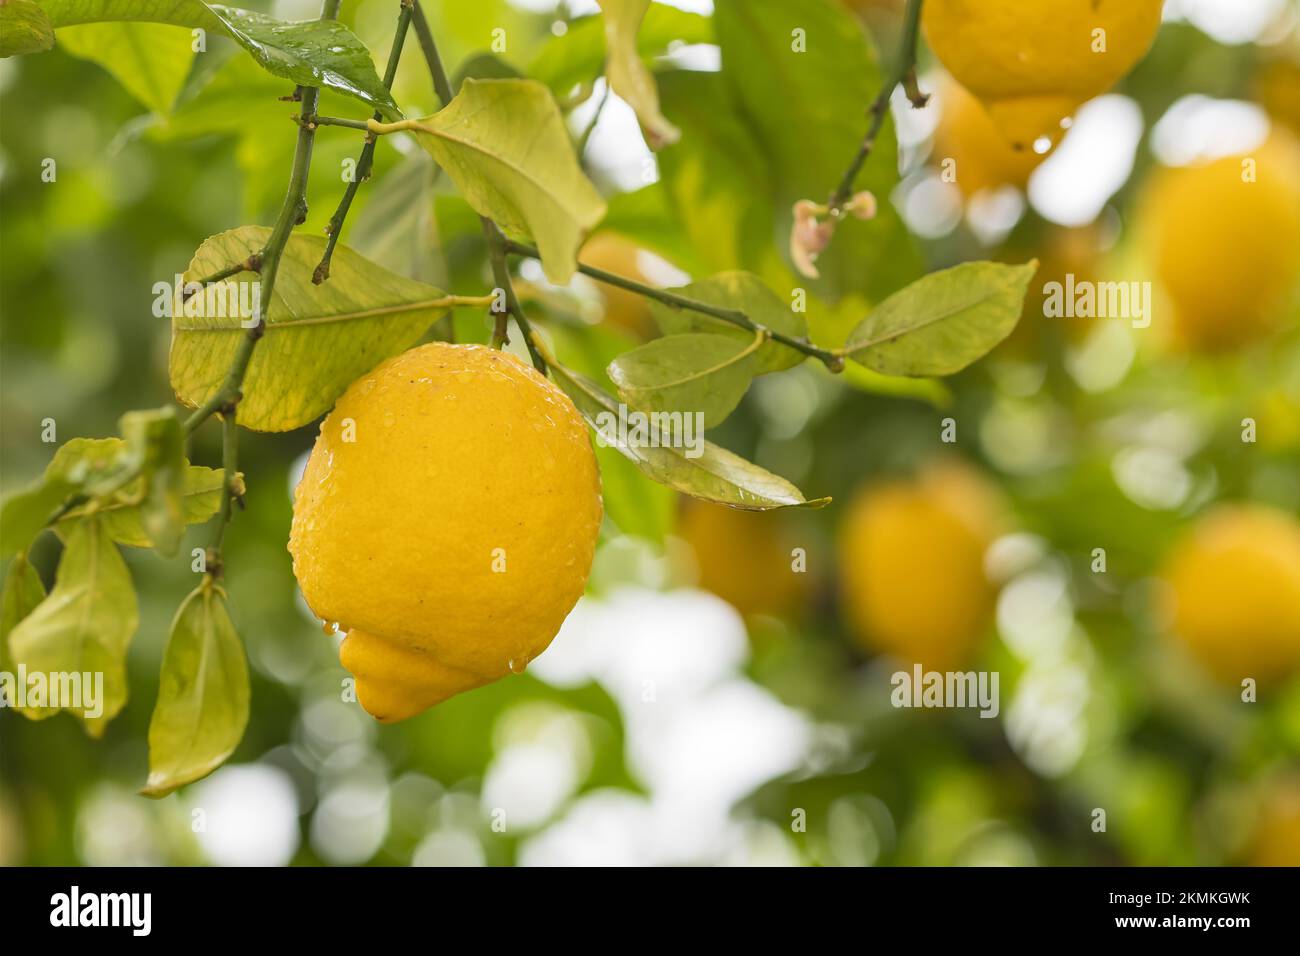 Citrons jaunes mûrs dans les gouttes d'eau après la pluie accrochée sur une branche Banque D'Images